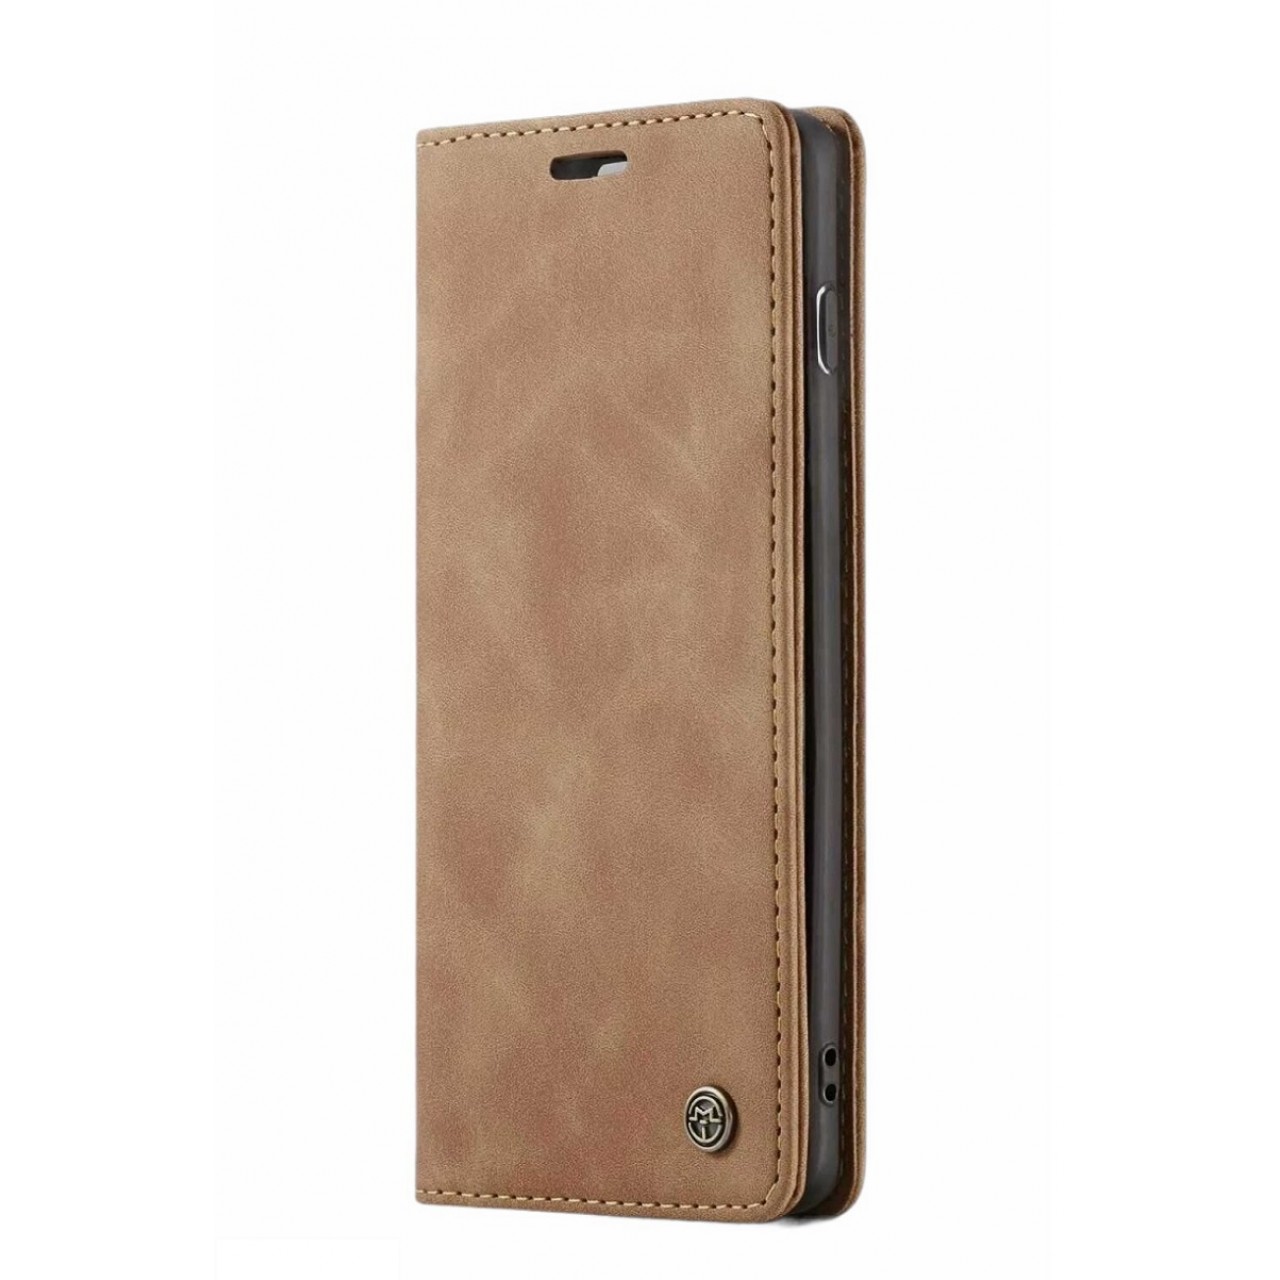 Θήκη Προστασίας Δερμάτινη Τύπου Wallet iPhone XR - Luxury Leather Flip Case Caseme - Tan